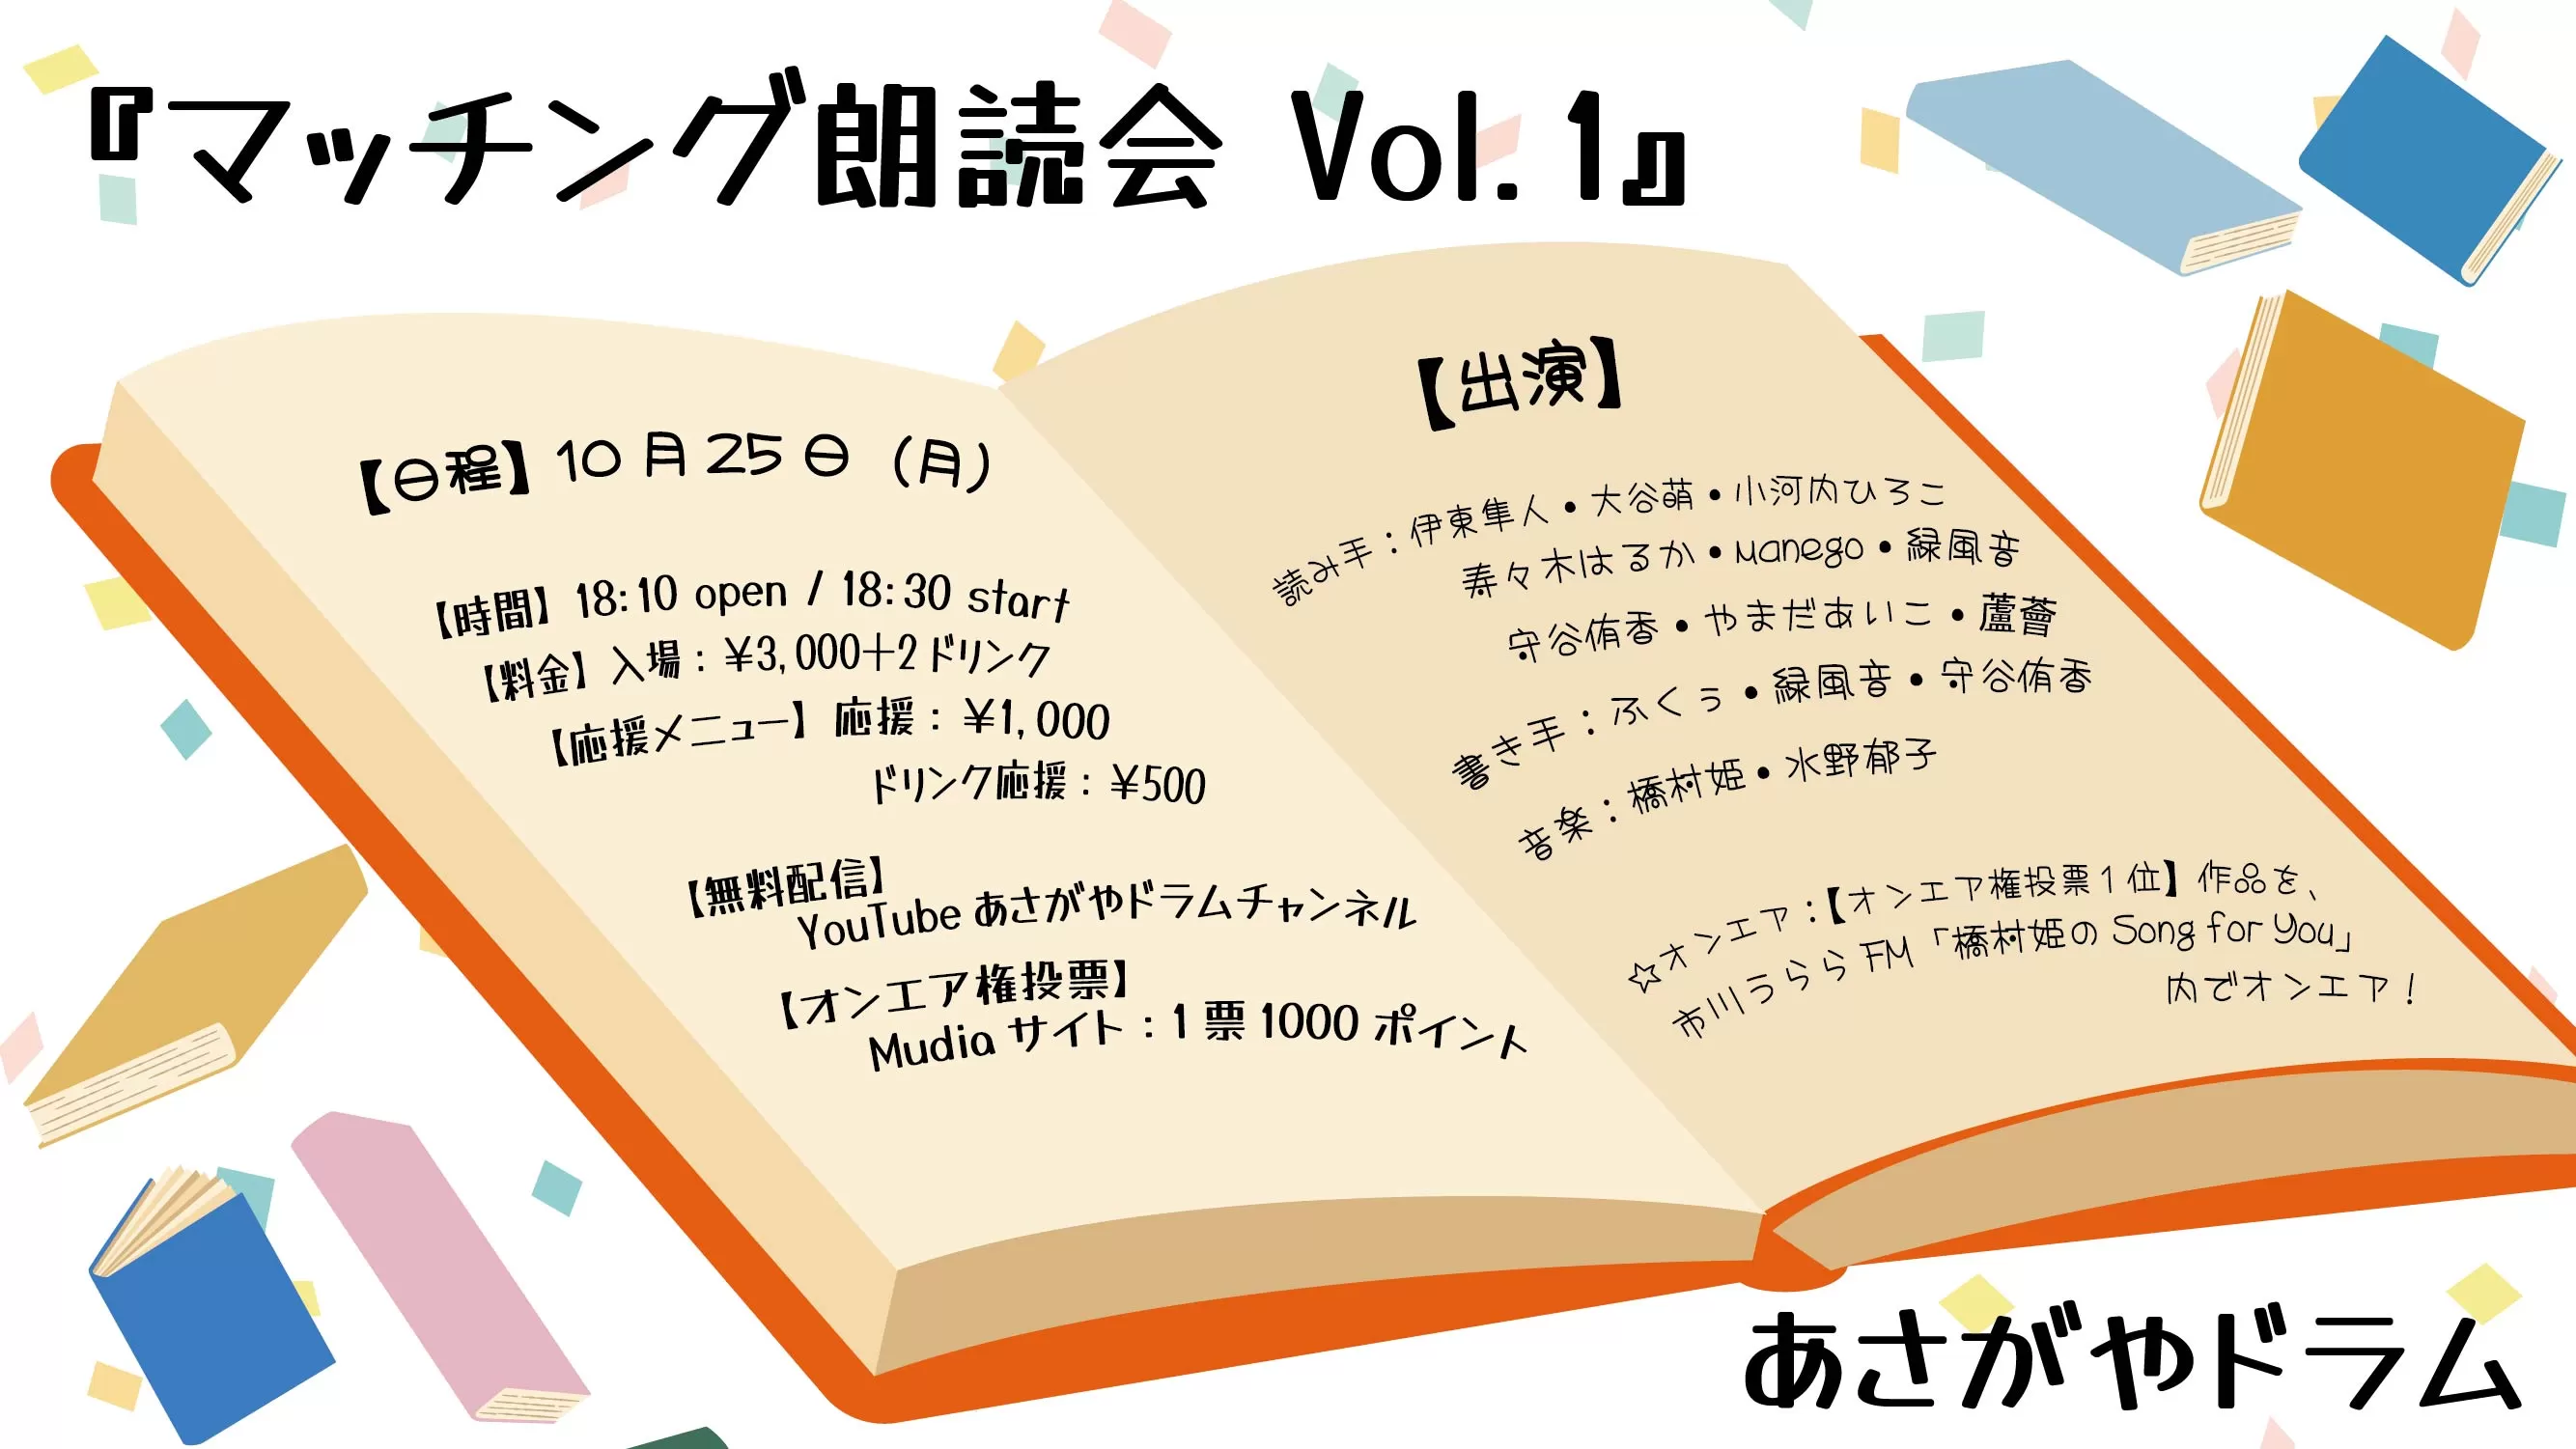 マッチング朗読会 Vol.1